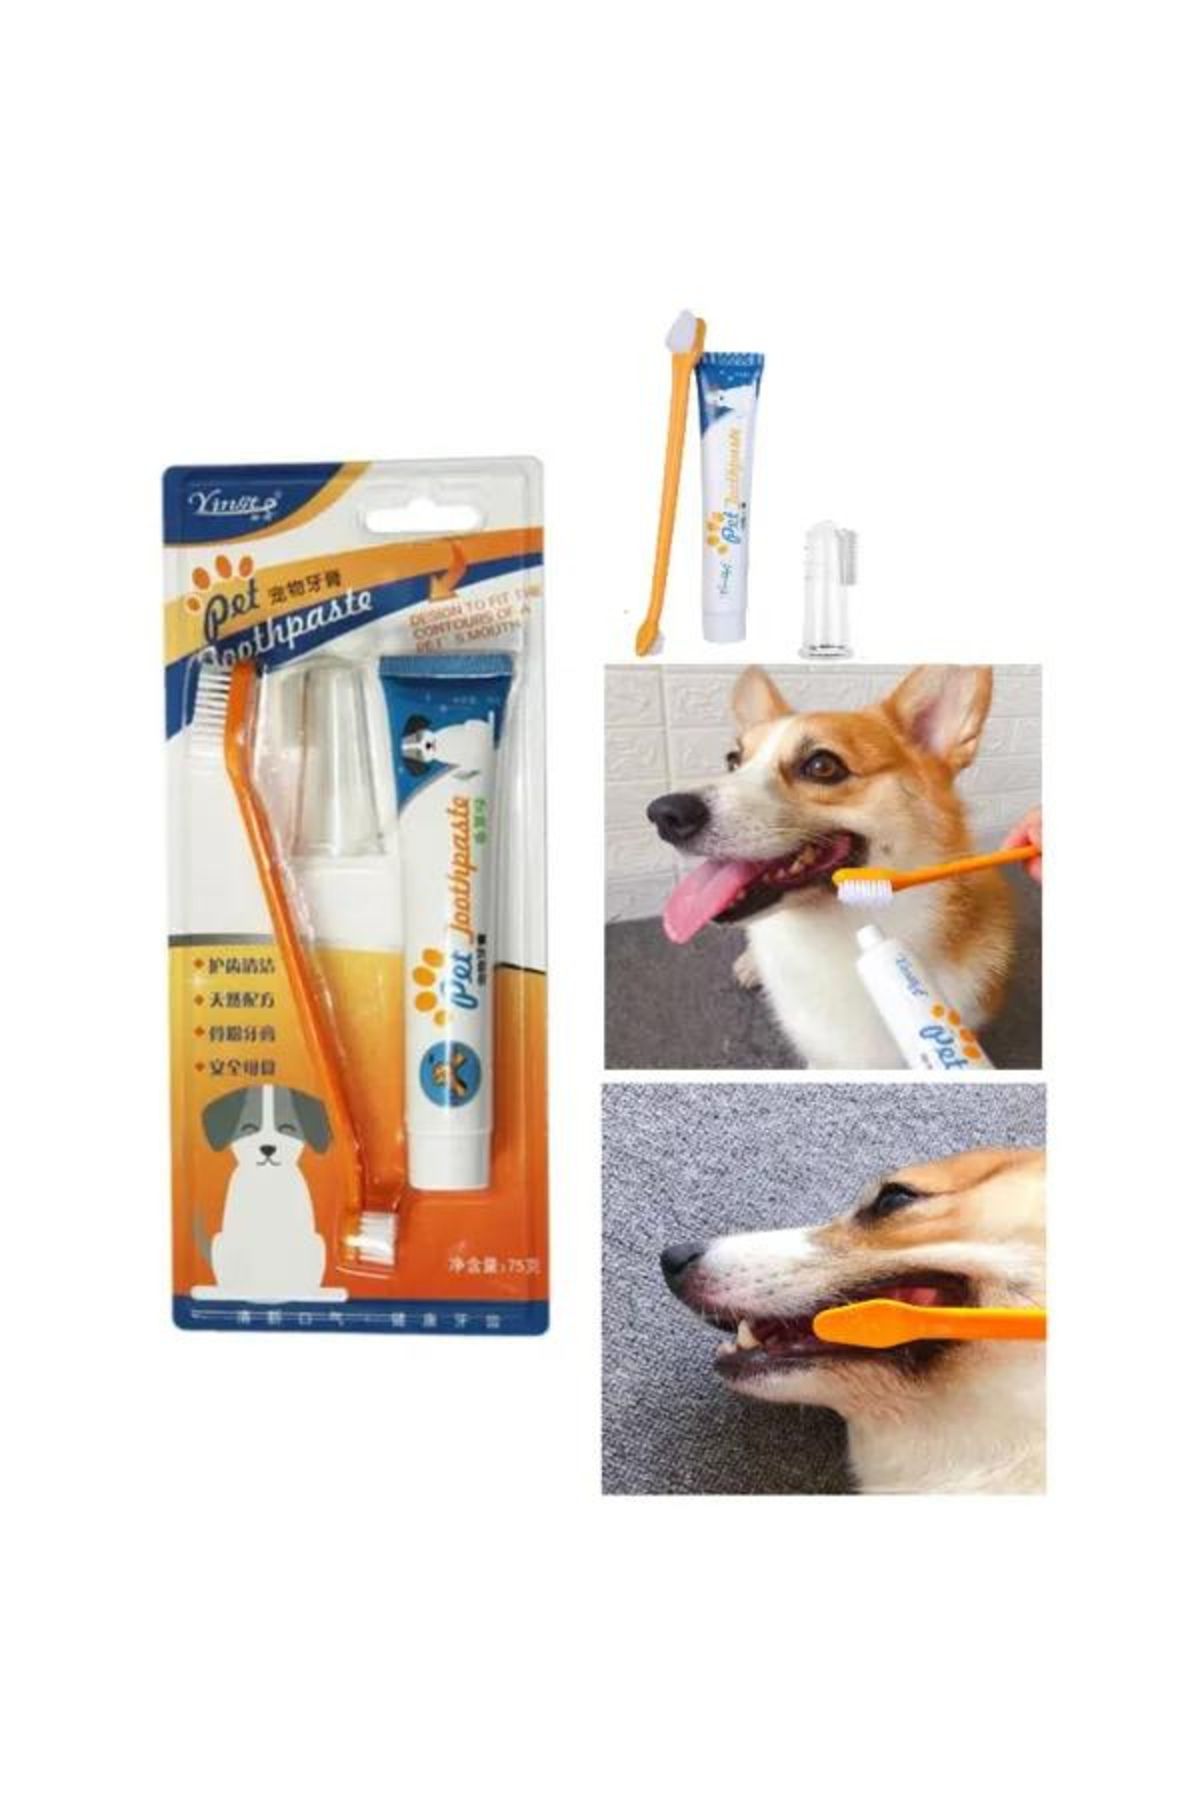 A.C.E.K PLASTİK Kedi Köpek Diş Fırçası ve Diş Macunu Seti Yenilebilir Diş Macunu Dental Kit Ağız ve Diş Sağlık Seti